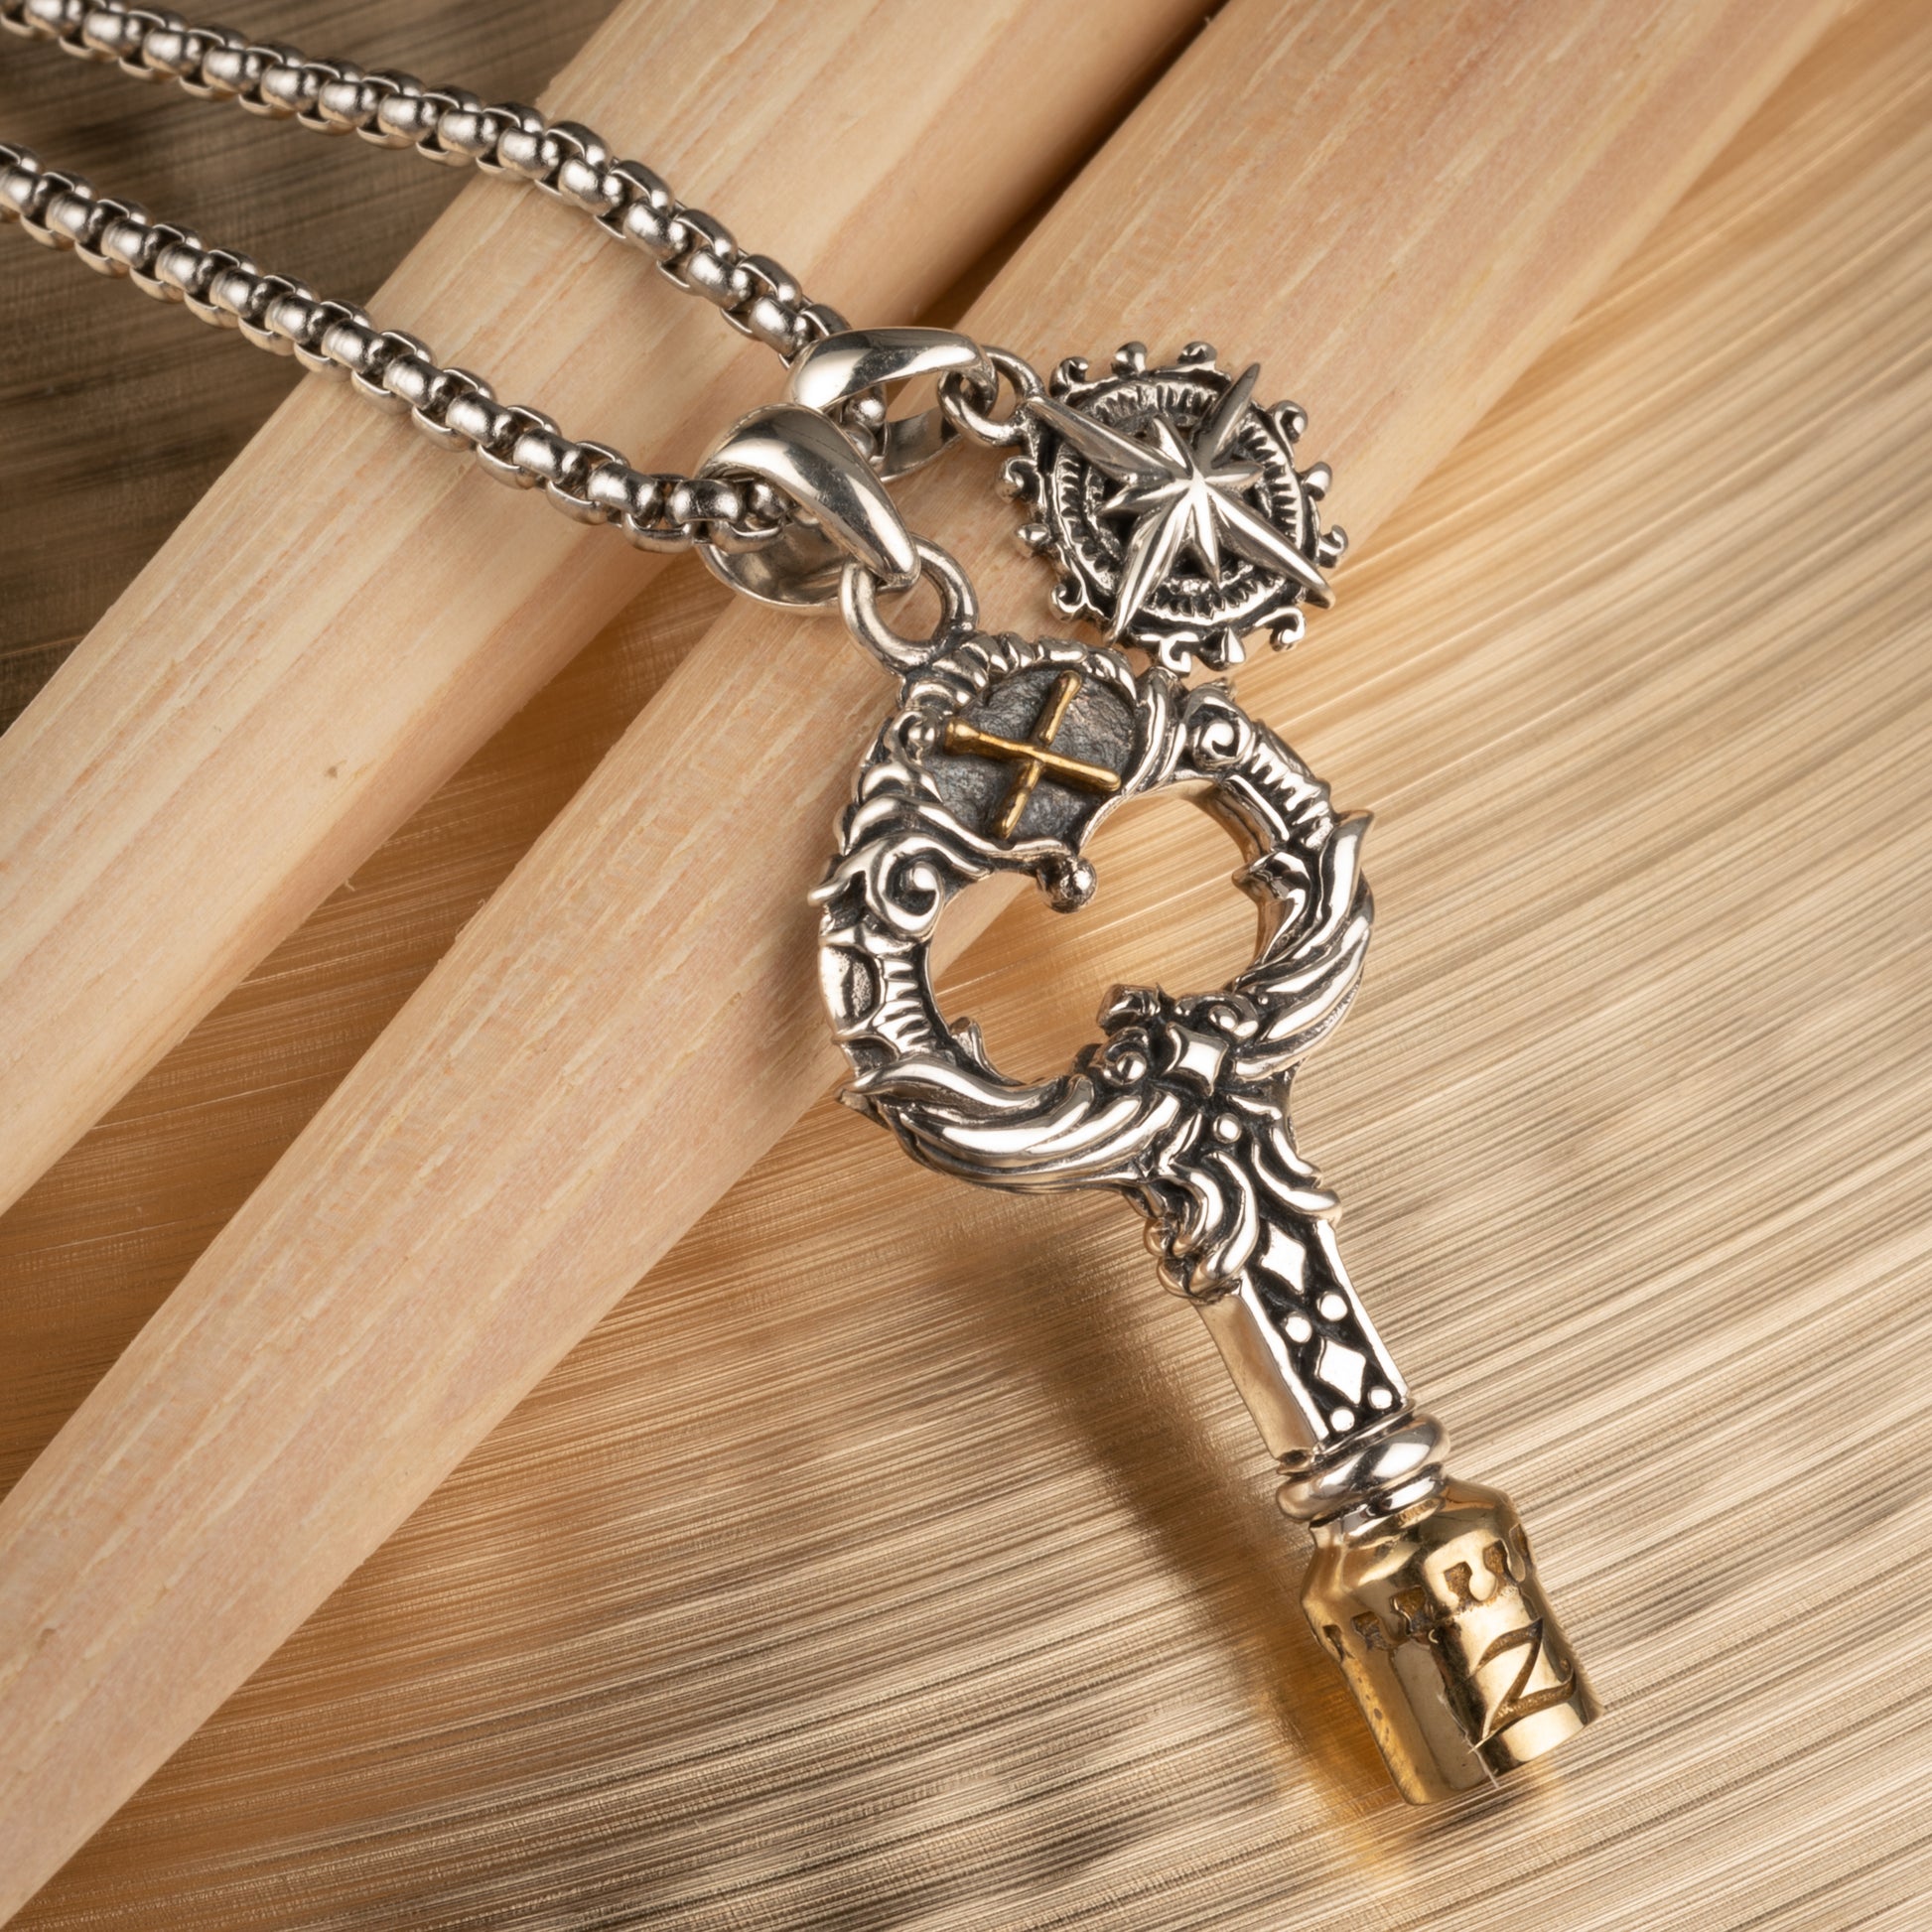 couple necklaces key